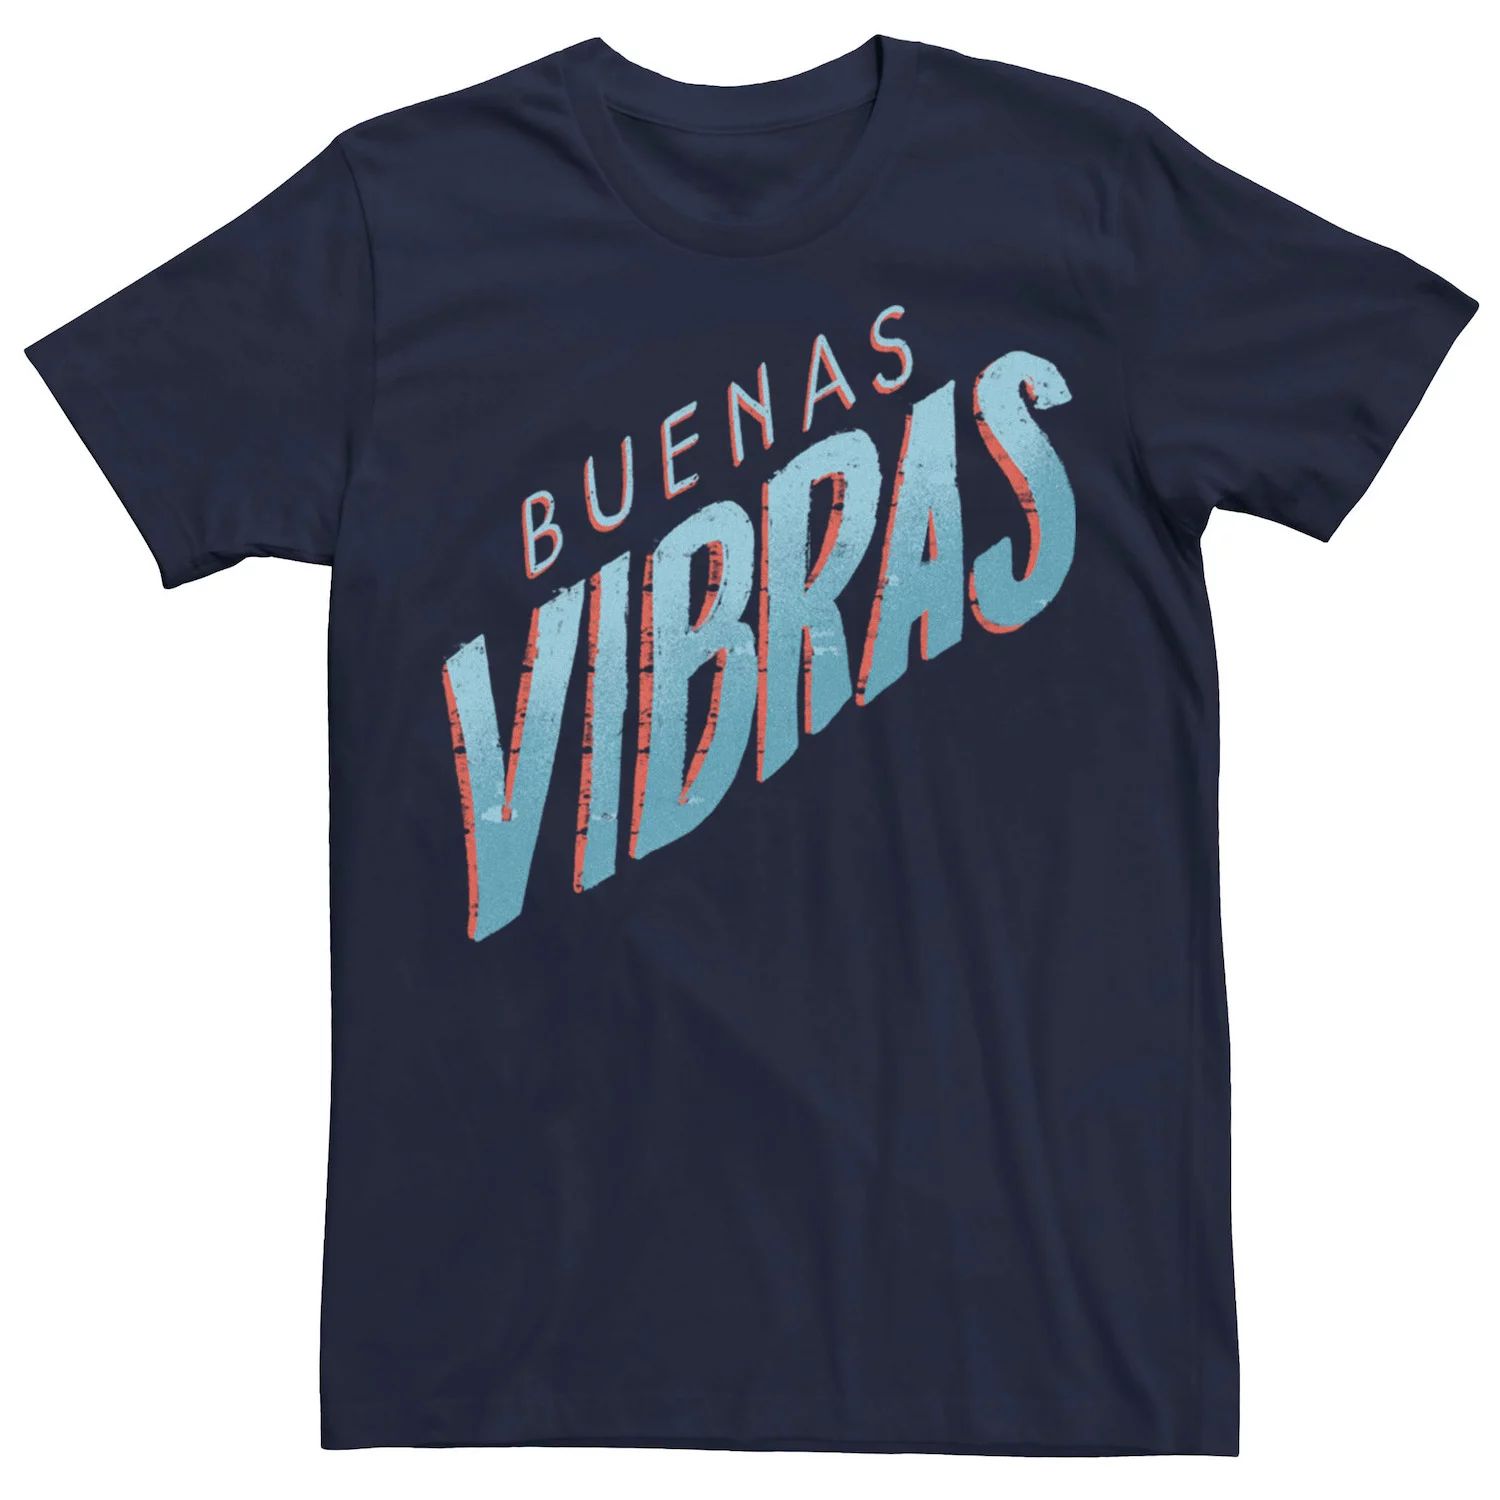 цена Мужская синяя футболка с текстом Gonzales Buenas Vibras Licensed Character